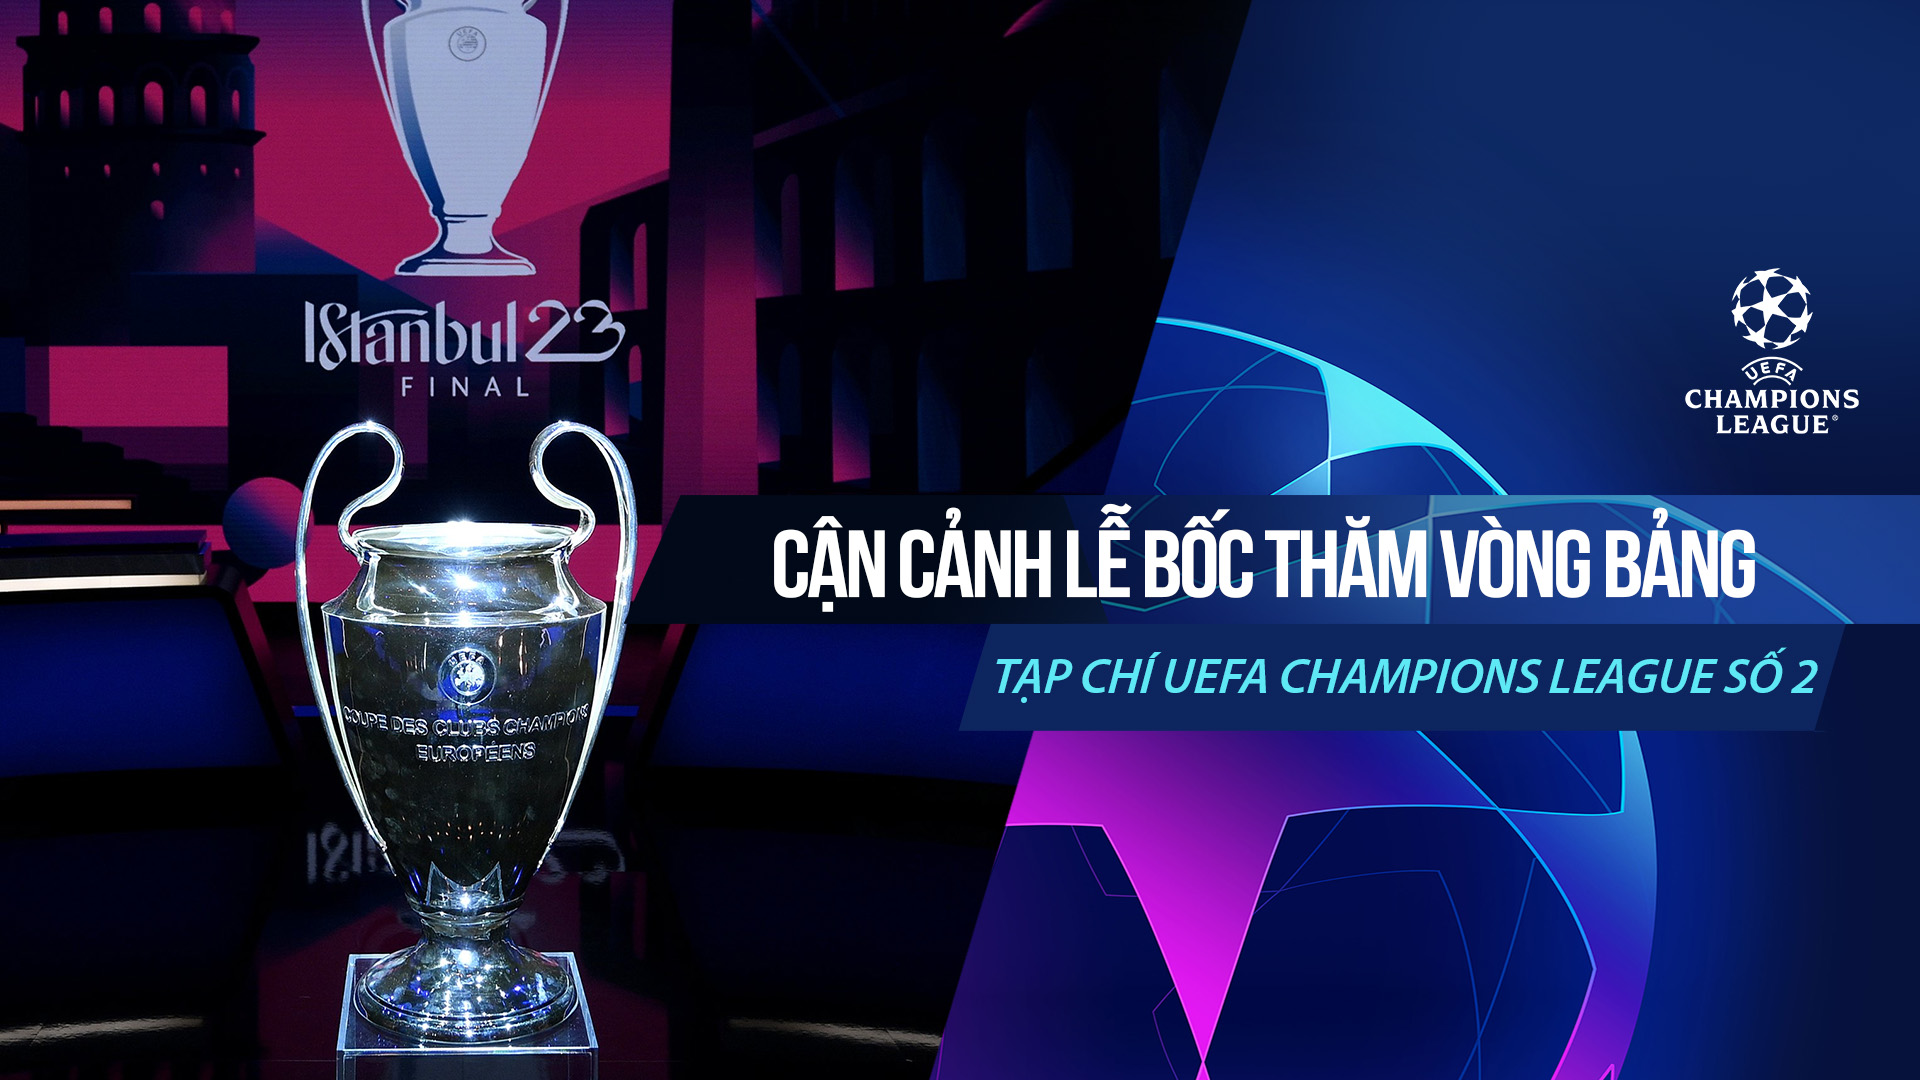 Tạp chí UEFA Champions League 2022/23 số 2 - Champions League